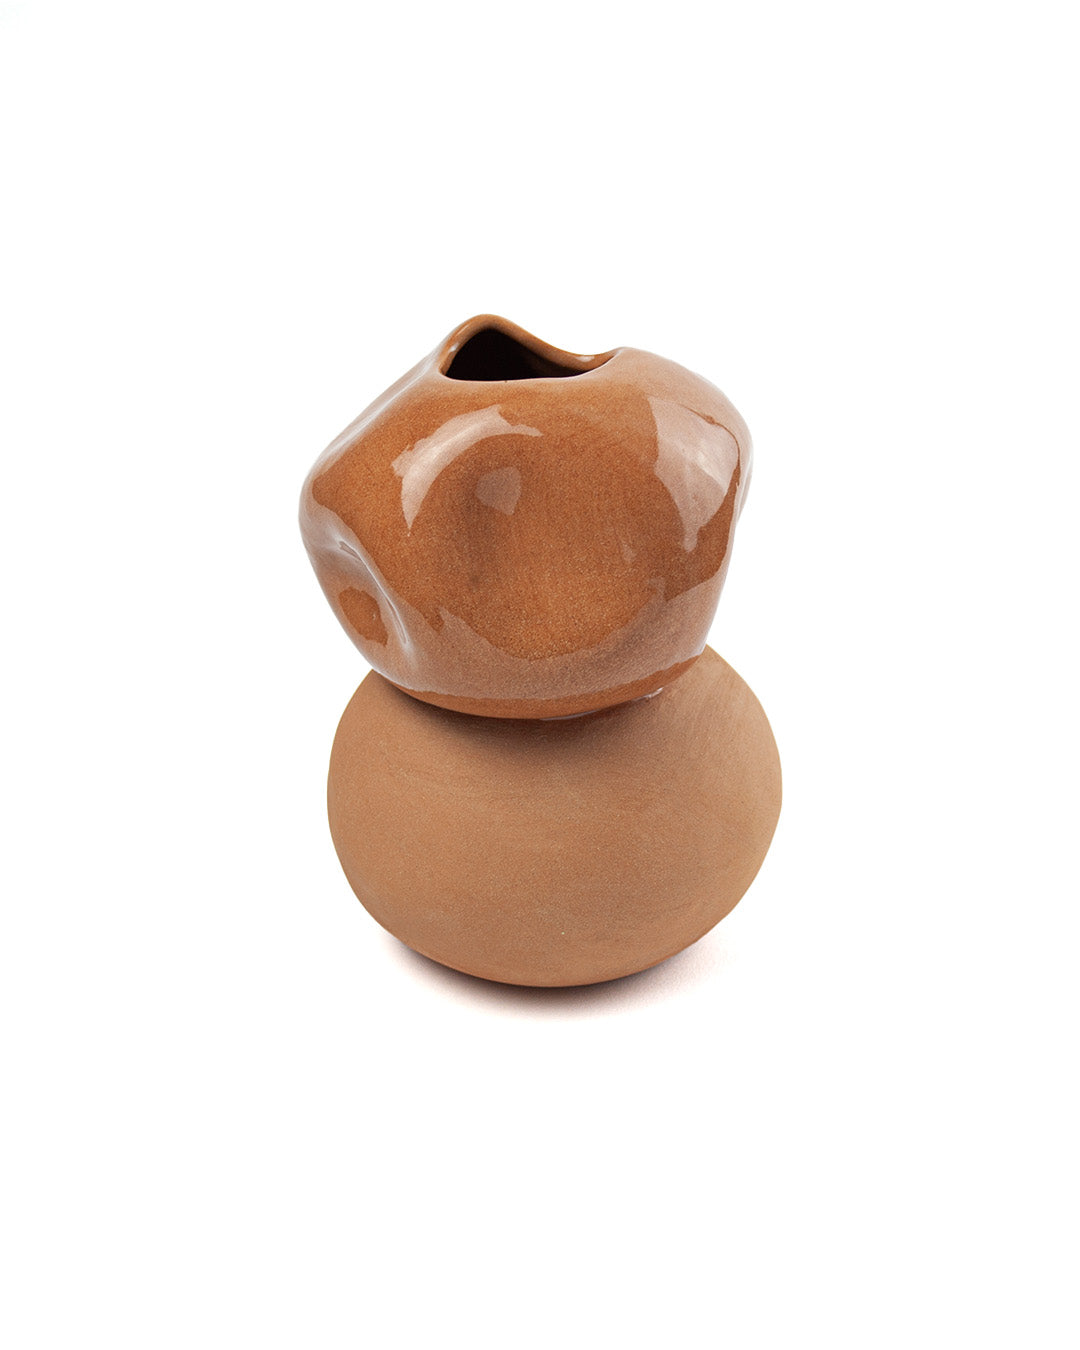 Little Man Vase - Claytical